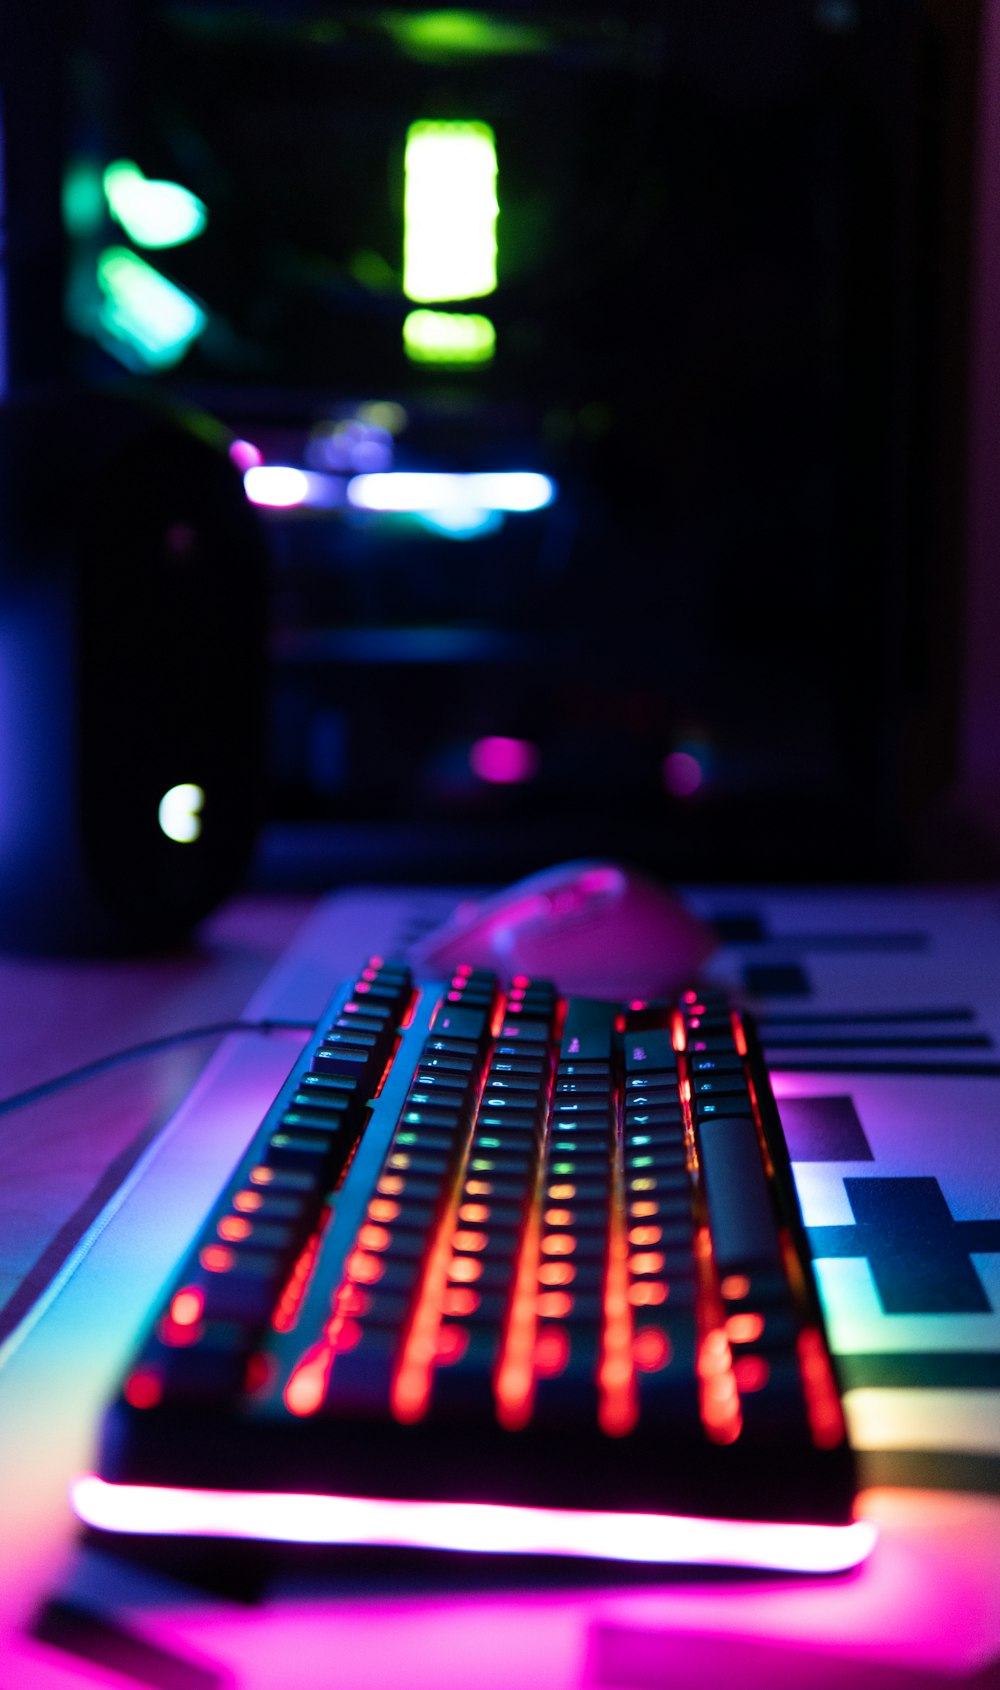 Tận hưởng trải nghiệm sử dụng bàn phím máy tính vô cùng đẳng cấp với bàn phím màu đen trên bàn gỗ nâu. Sự kết hợp tuyệt vời giữa độ sang trọng và hiện đại cho phép bạn tối đa hóa trải nghiệm sử dụng bàn phím của mình. Xem hình ngay để tìm kiếm cho mình ấn tượng với bàn phím máy tính này nhé!